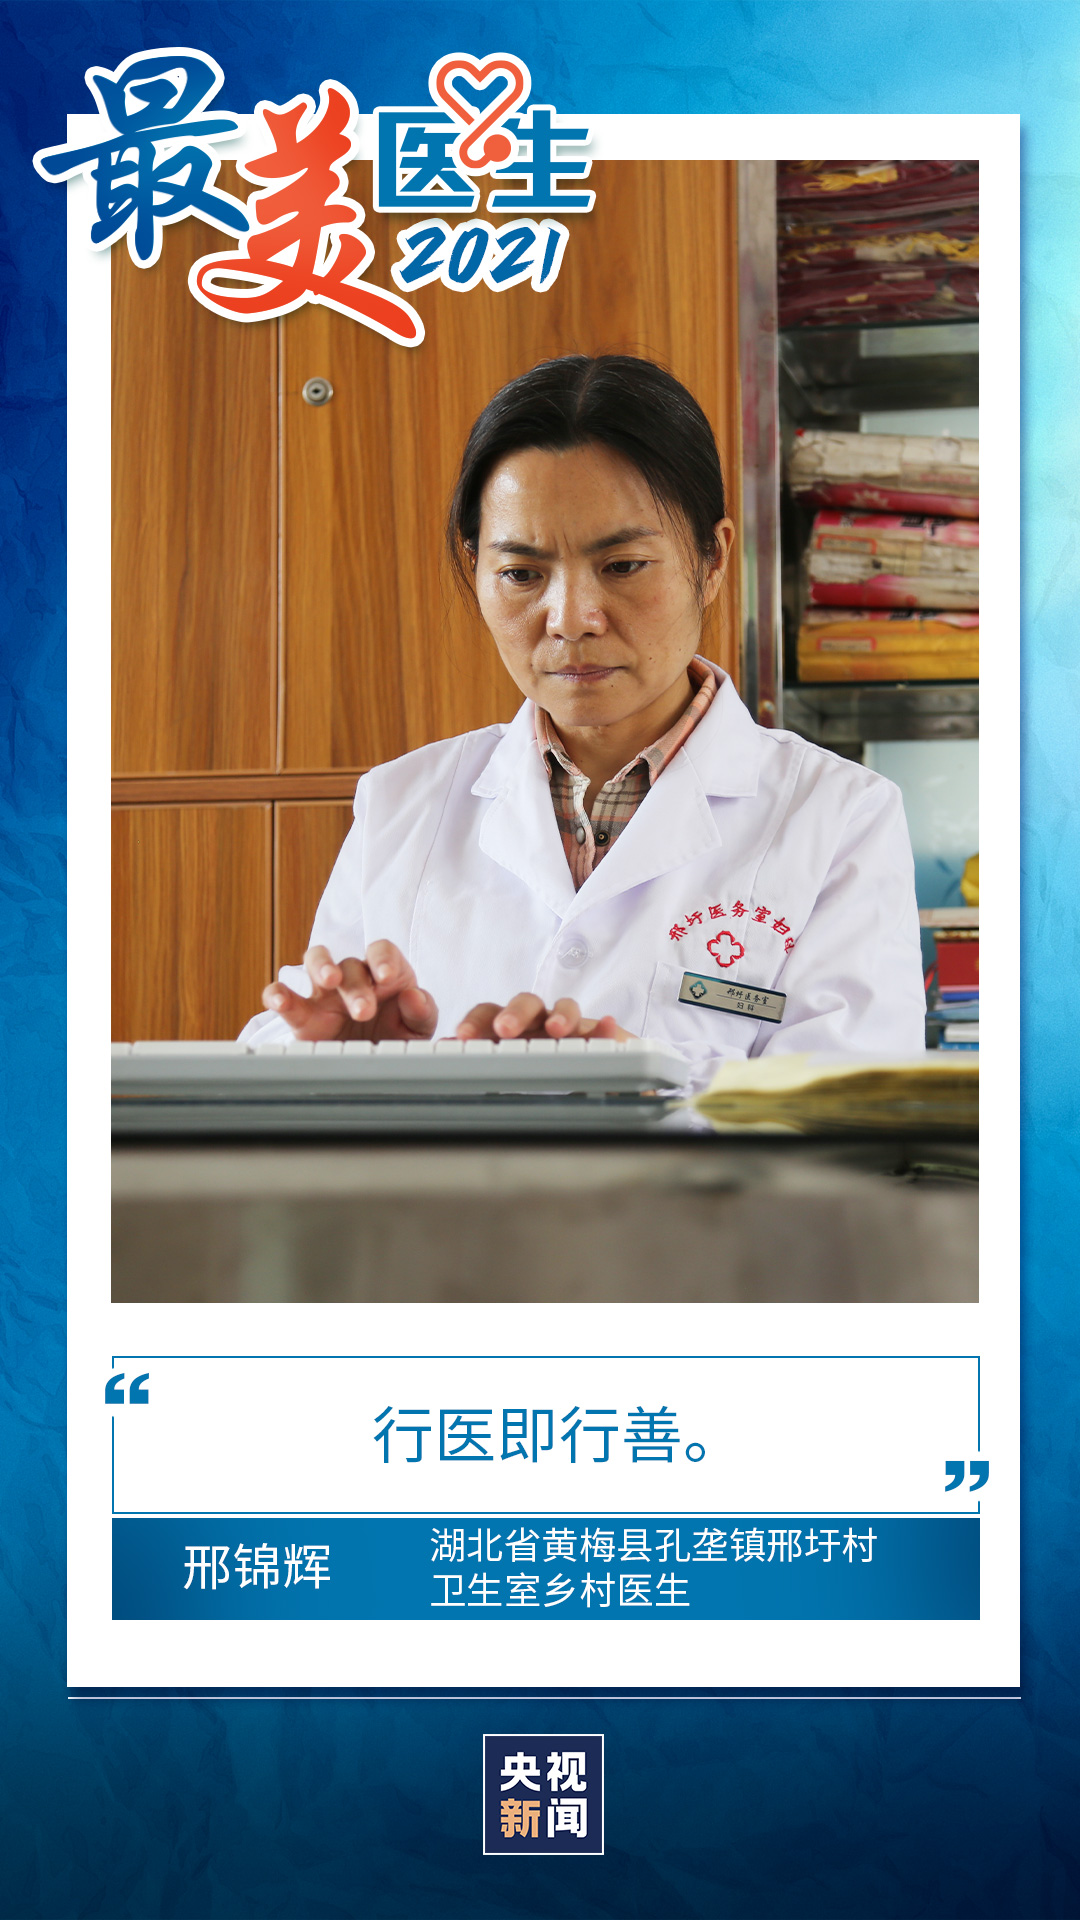 致敬中国医师丨带你认识2021“最美医生”